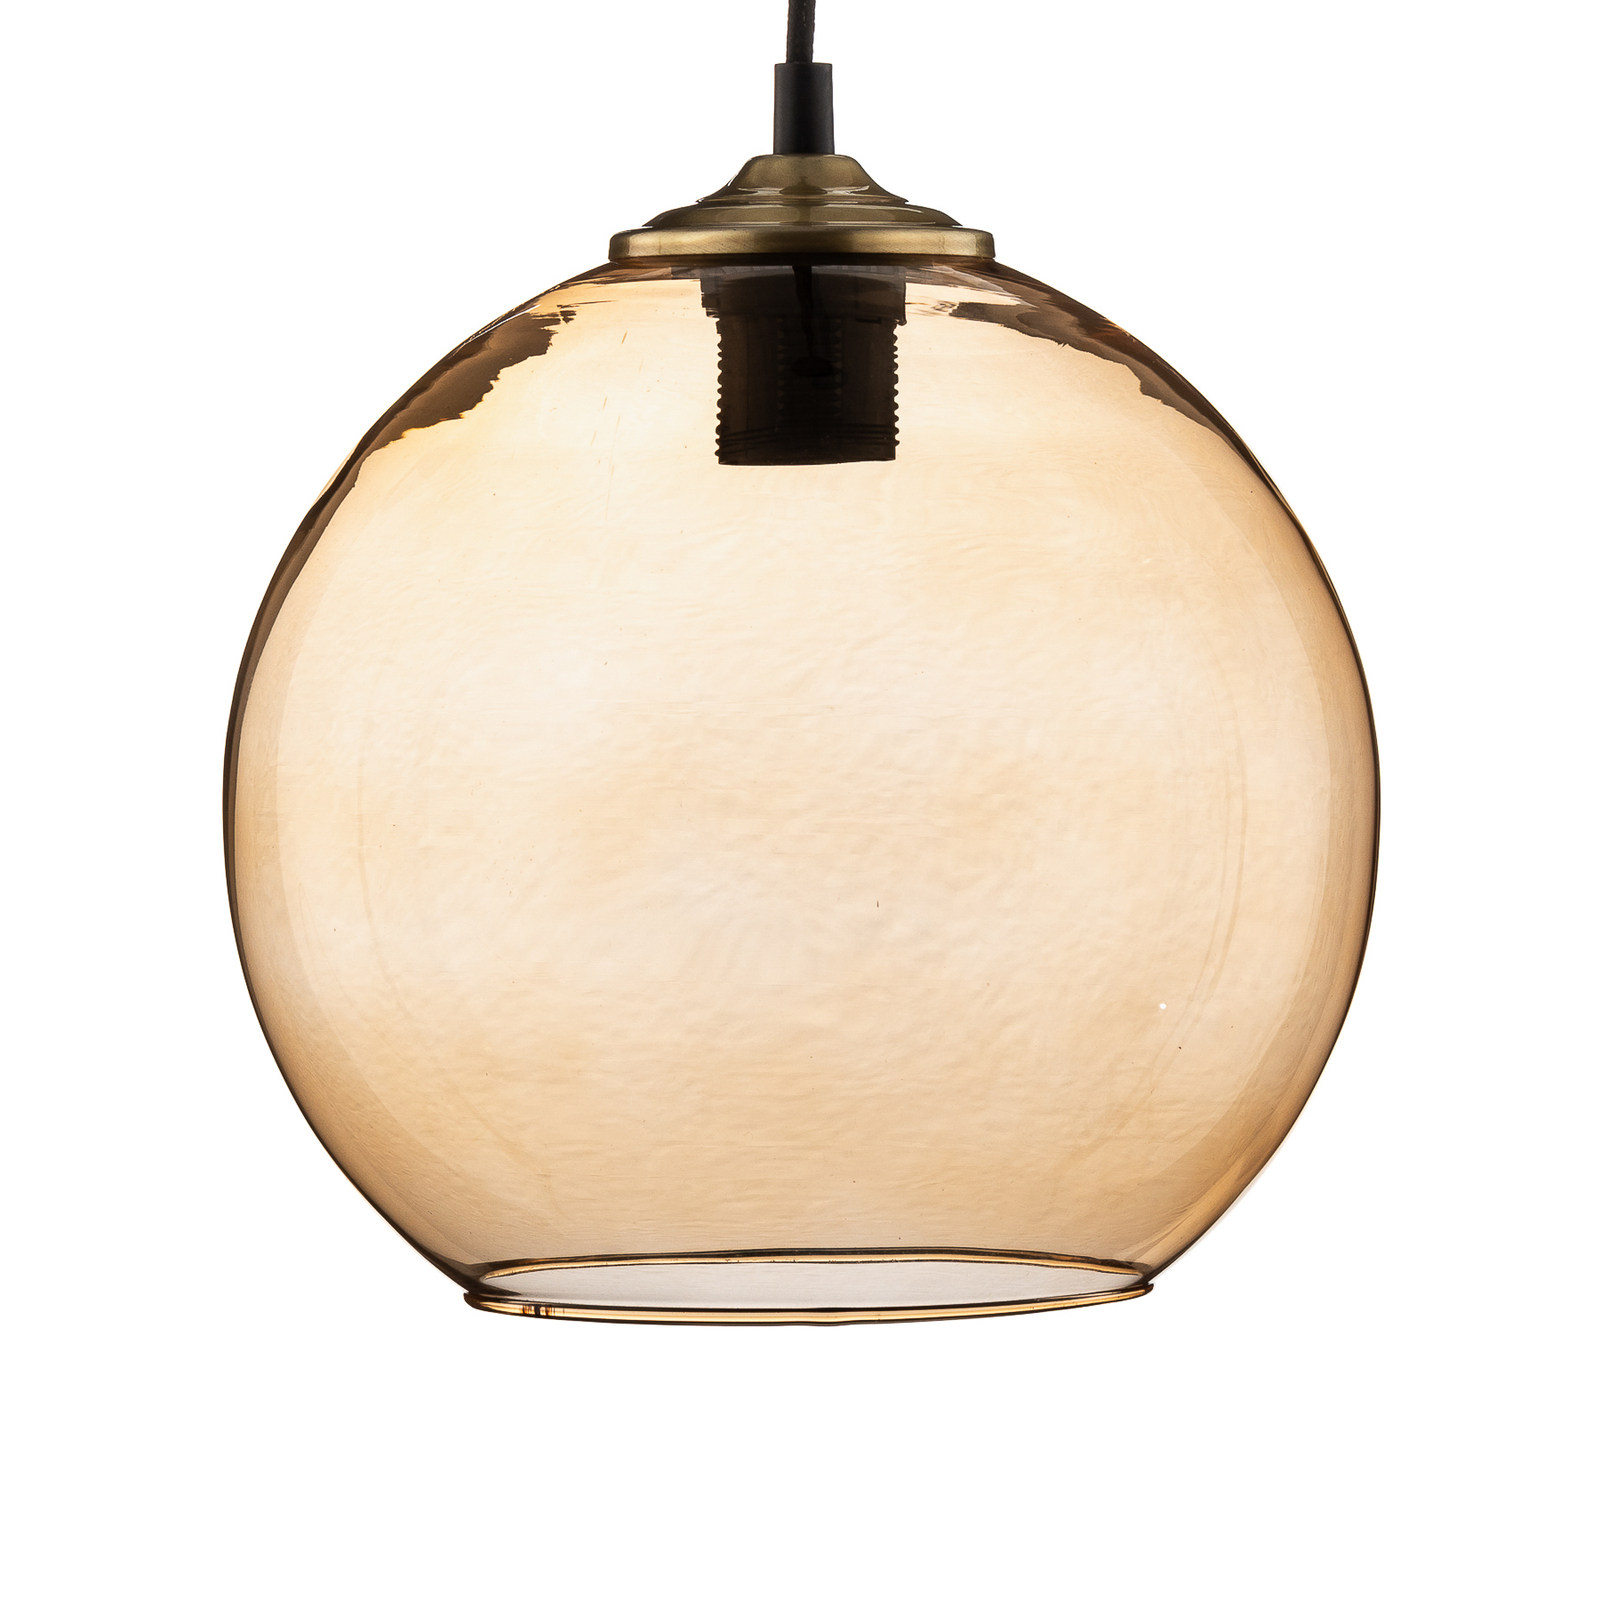 Hanging light ball glass ball shade light brown Ø25cm